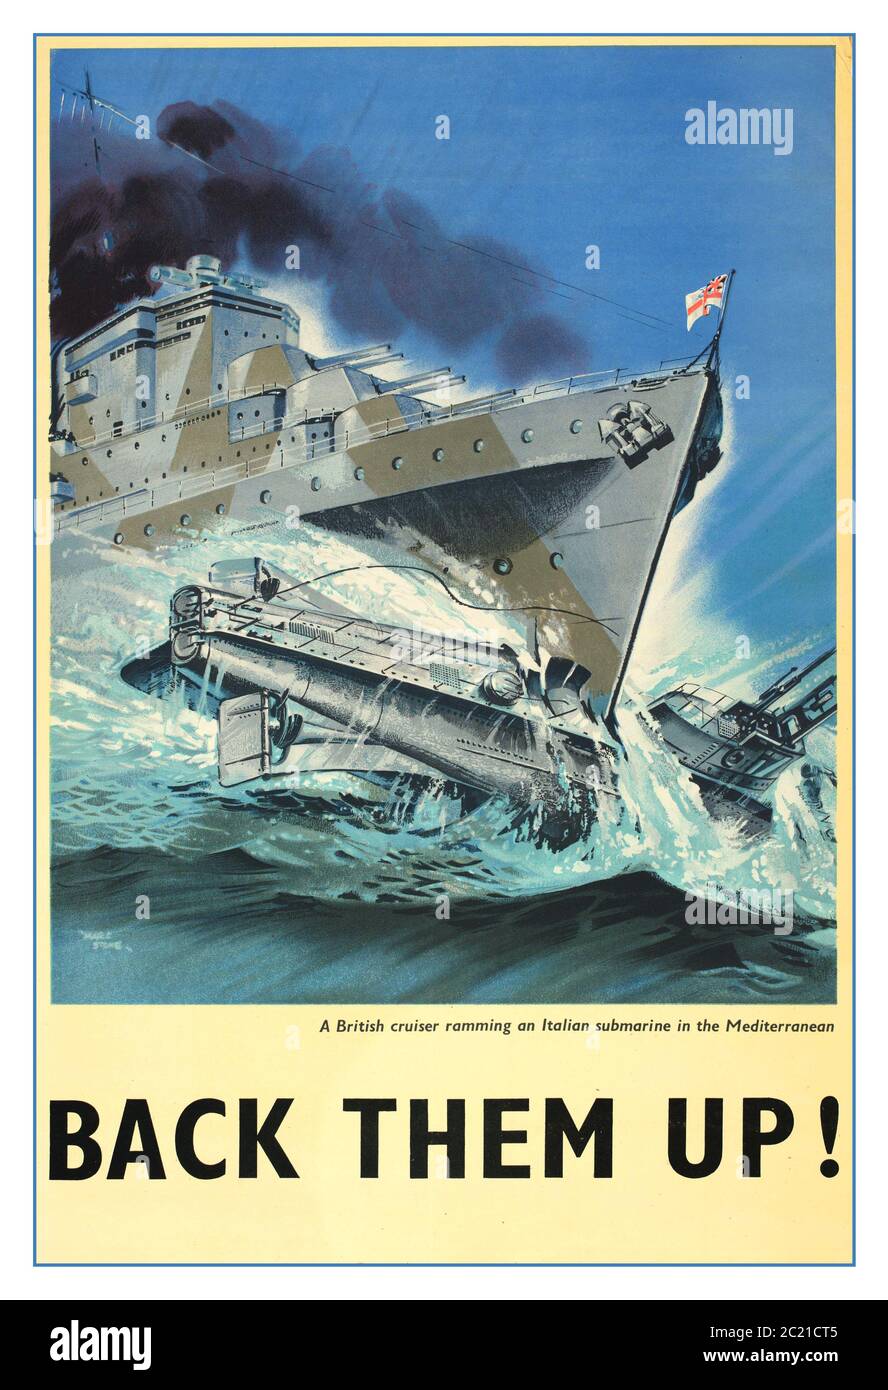 WW2 UK Vintage Propaganda Poster - 'Back-les Up ! ' affiche de la Seconde Guerre mondiale, croiseur britannique qui a fait un rempart d'un sous-marin italien en Méditerranée, pendant la Seconde Guerre mondiale Banque D'Images